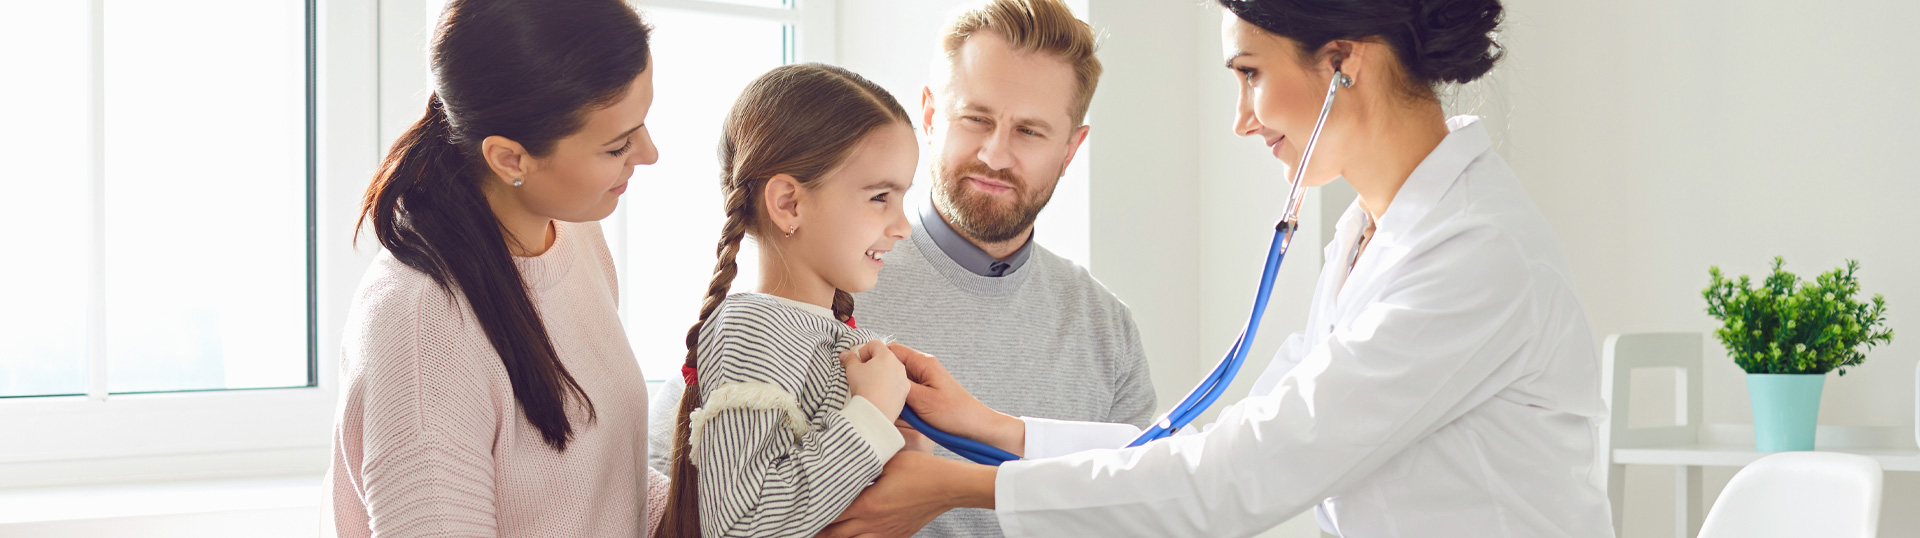 Junge Familie bei Arztbesuch, Ärztin hört die kleine Tochter ab